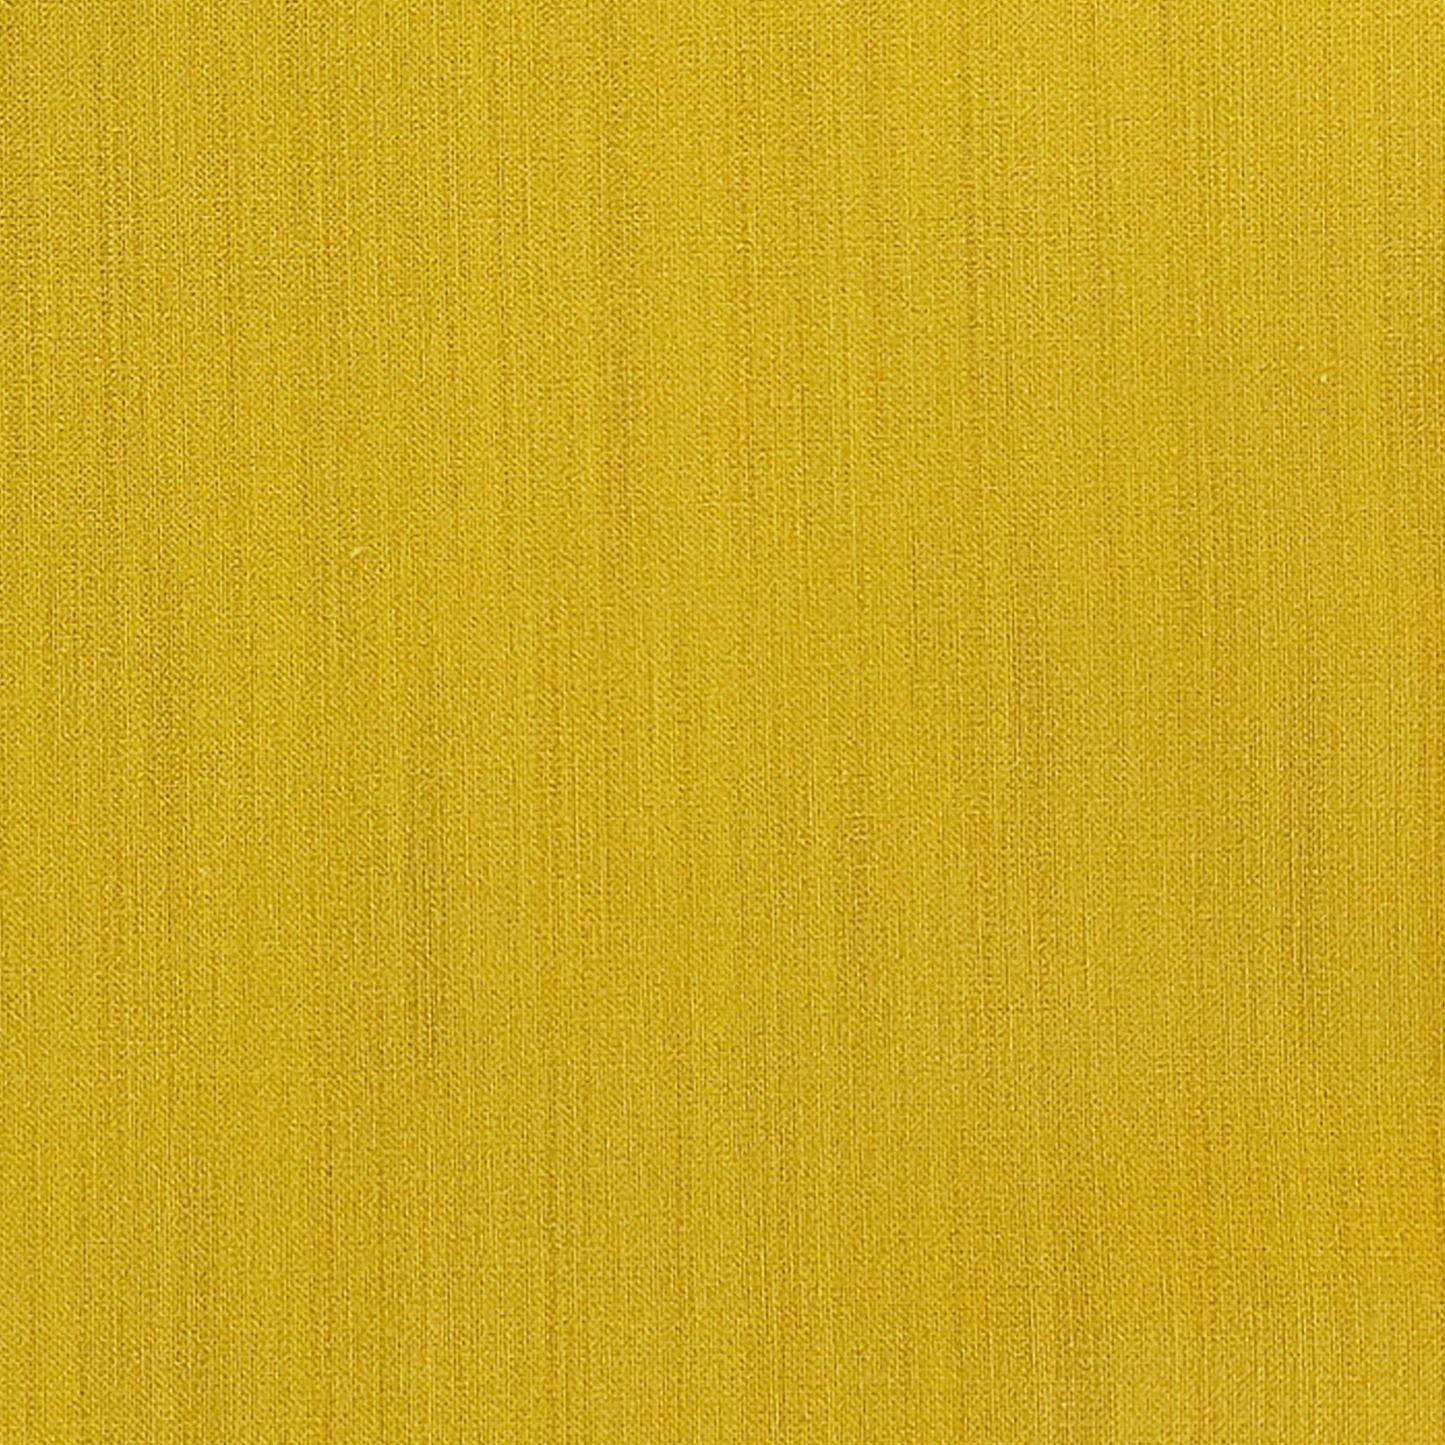 Raw Silk: Ochre Yellow